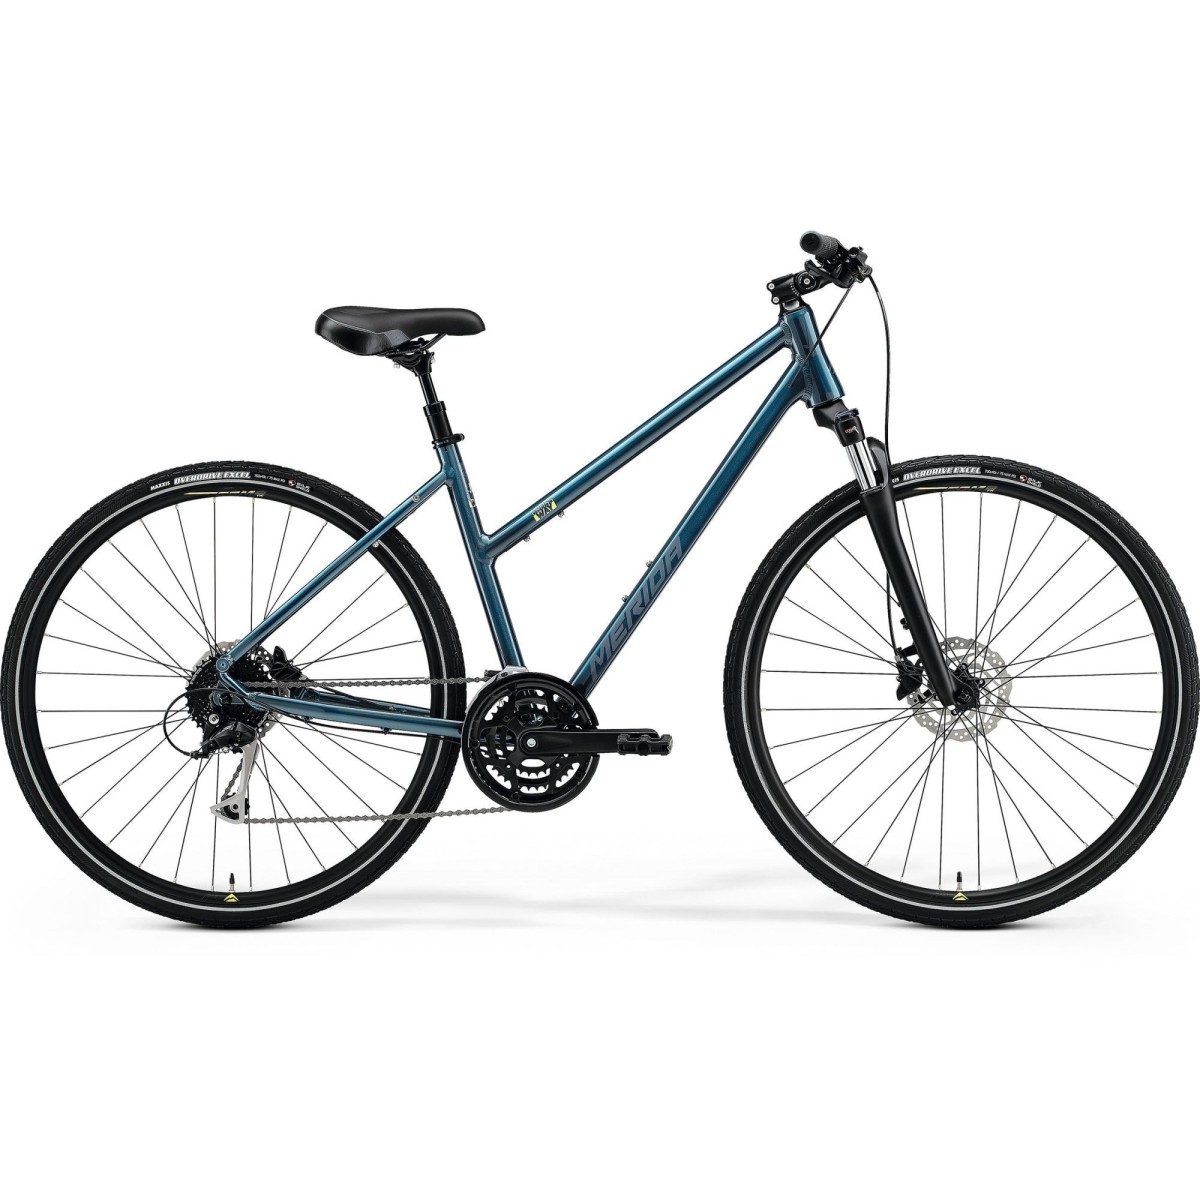 MERIDA CROSSWAY 100 LADY bicycle - blue